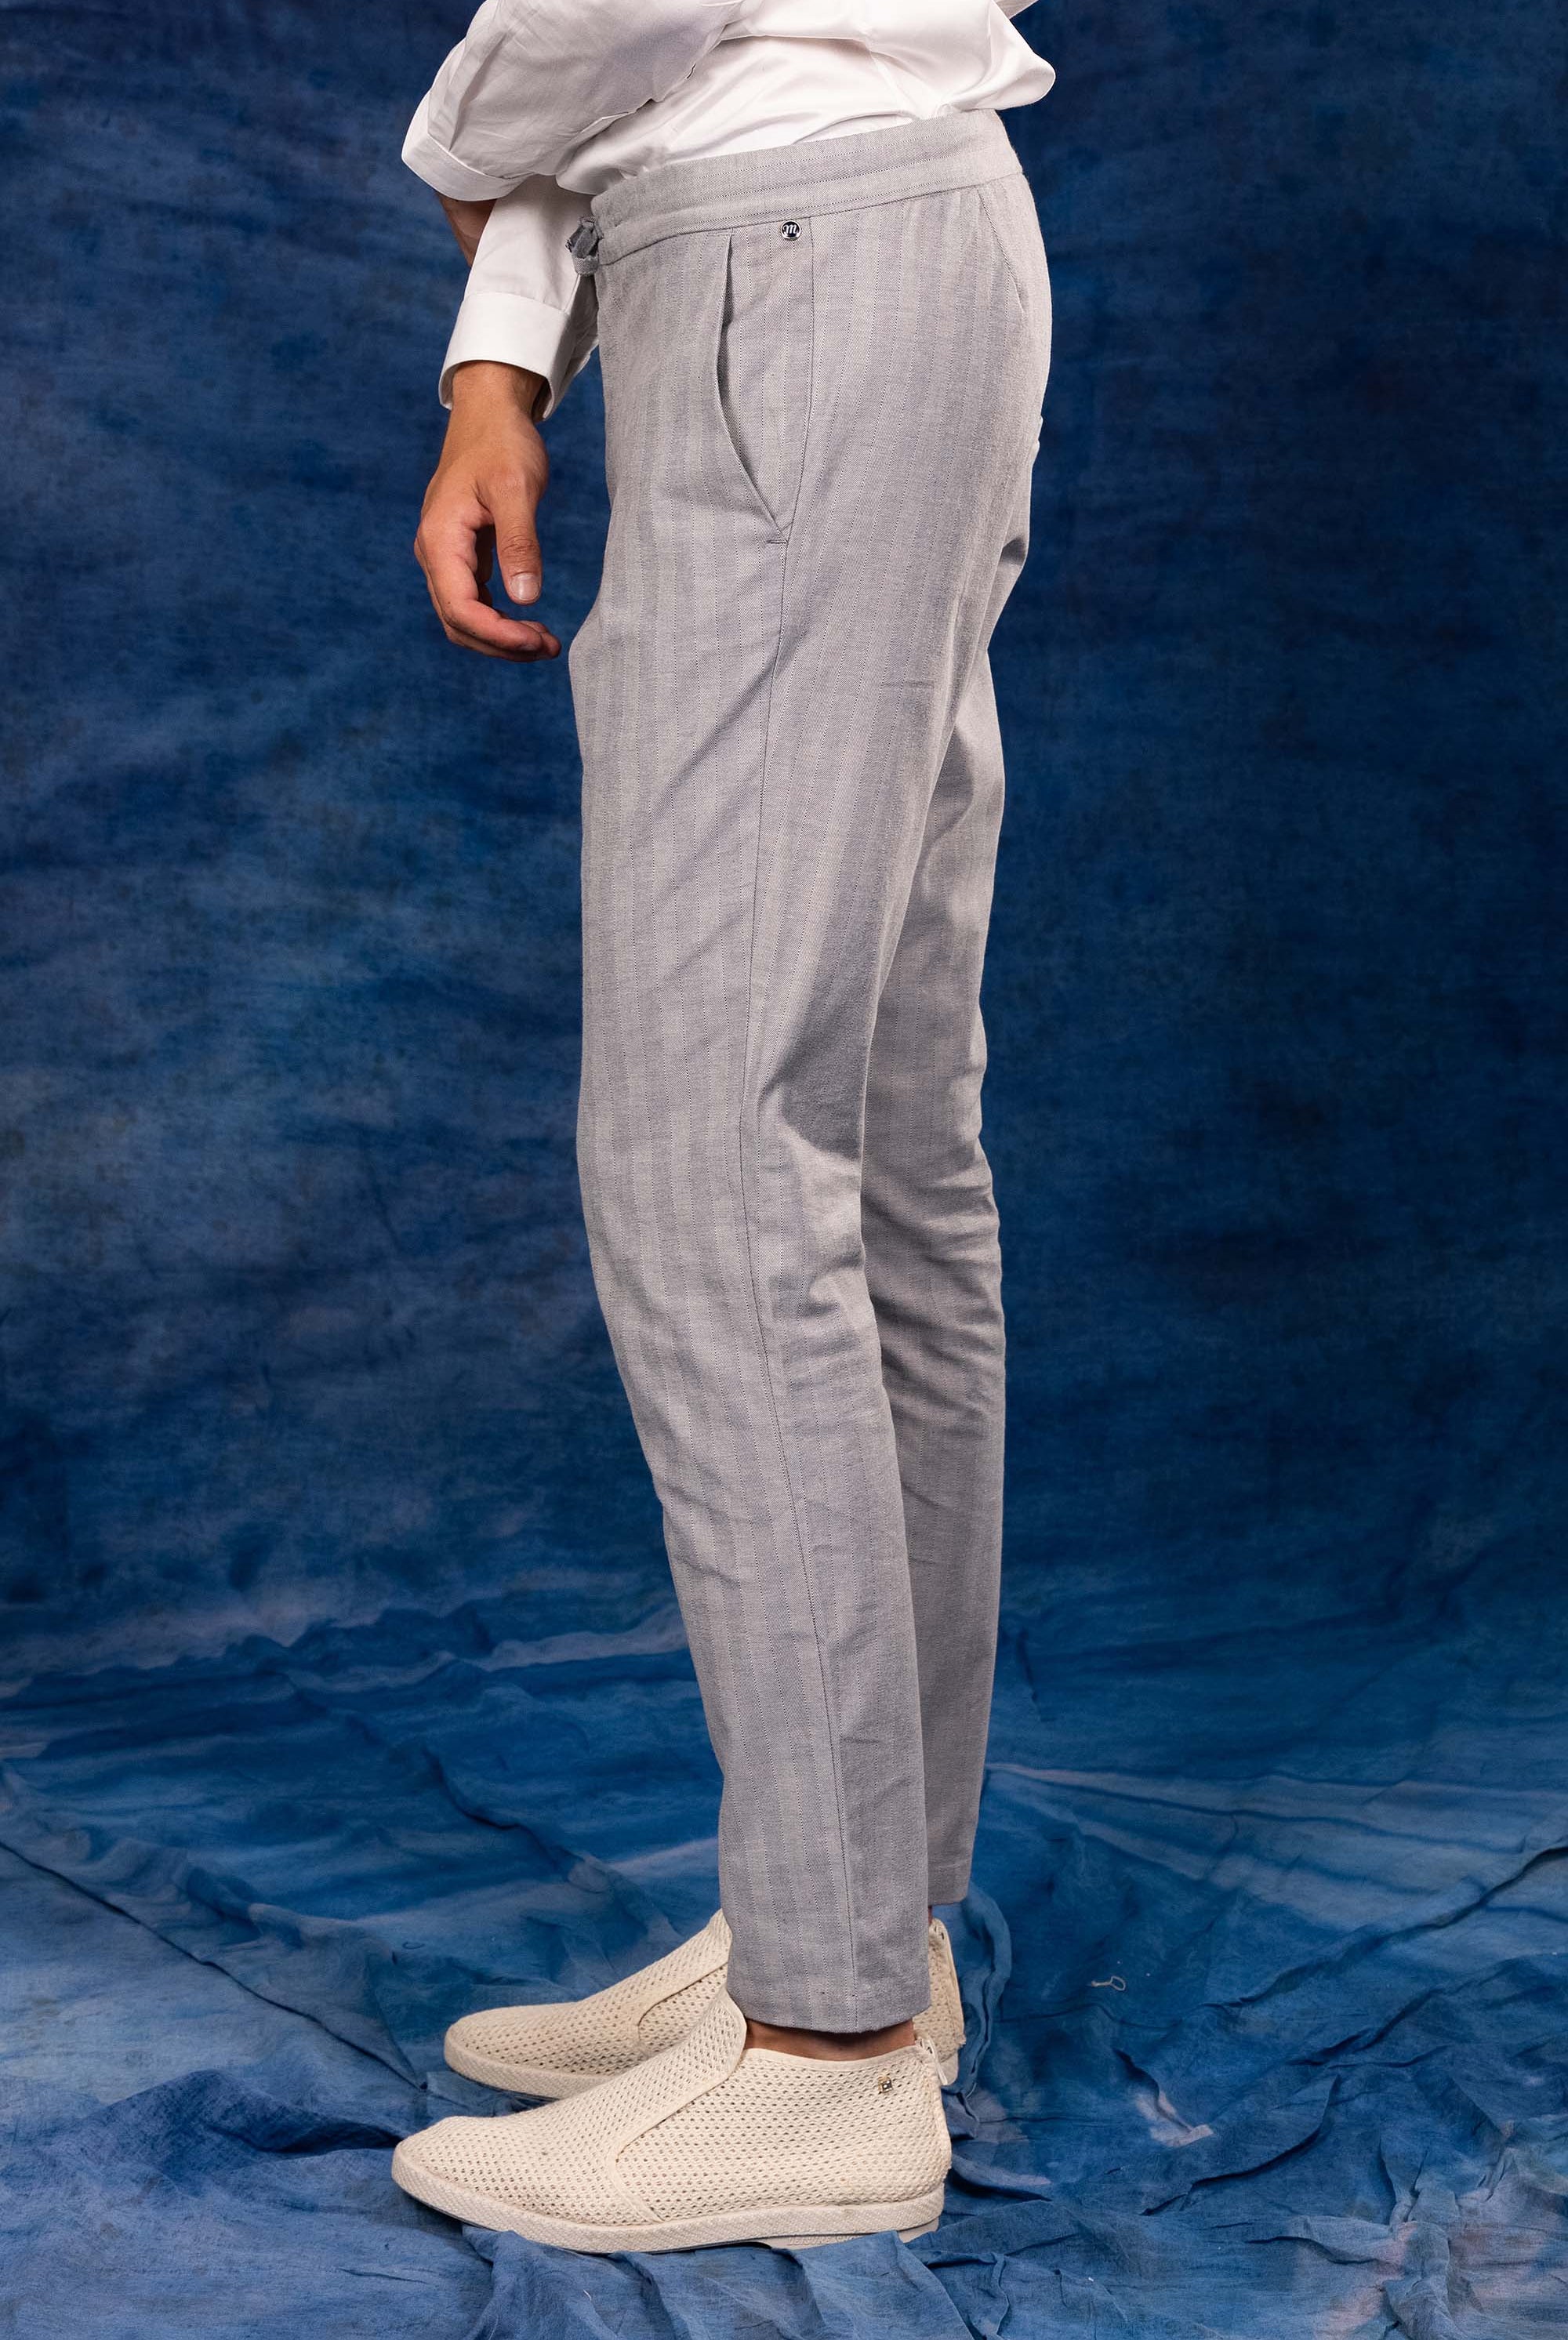 Pantalon Parejo Bleu Clair particulièrement confortables et stylés, parfaits à porter au quotidien